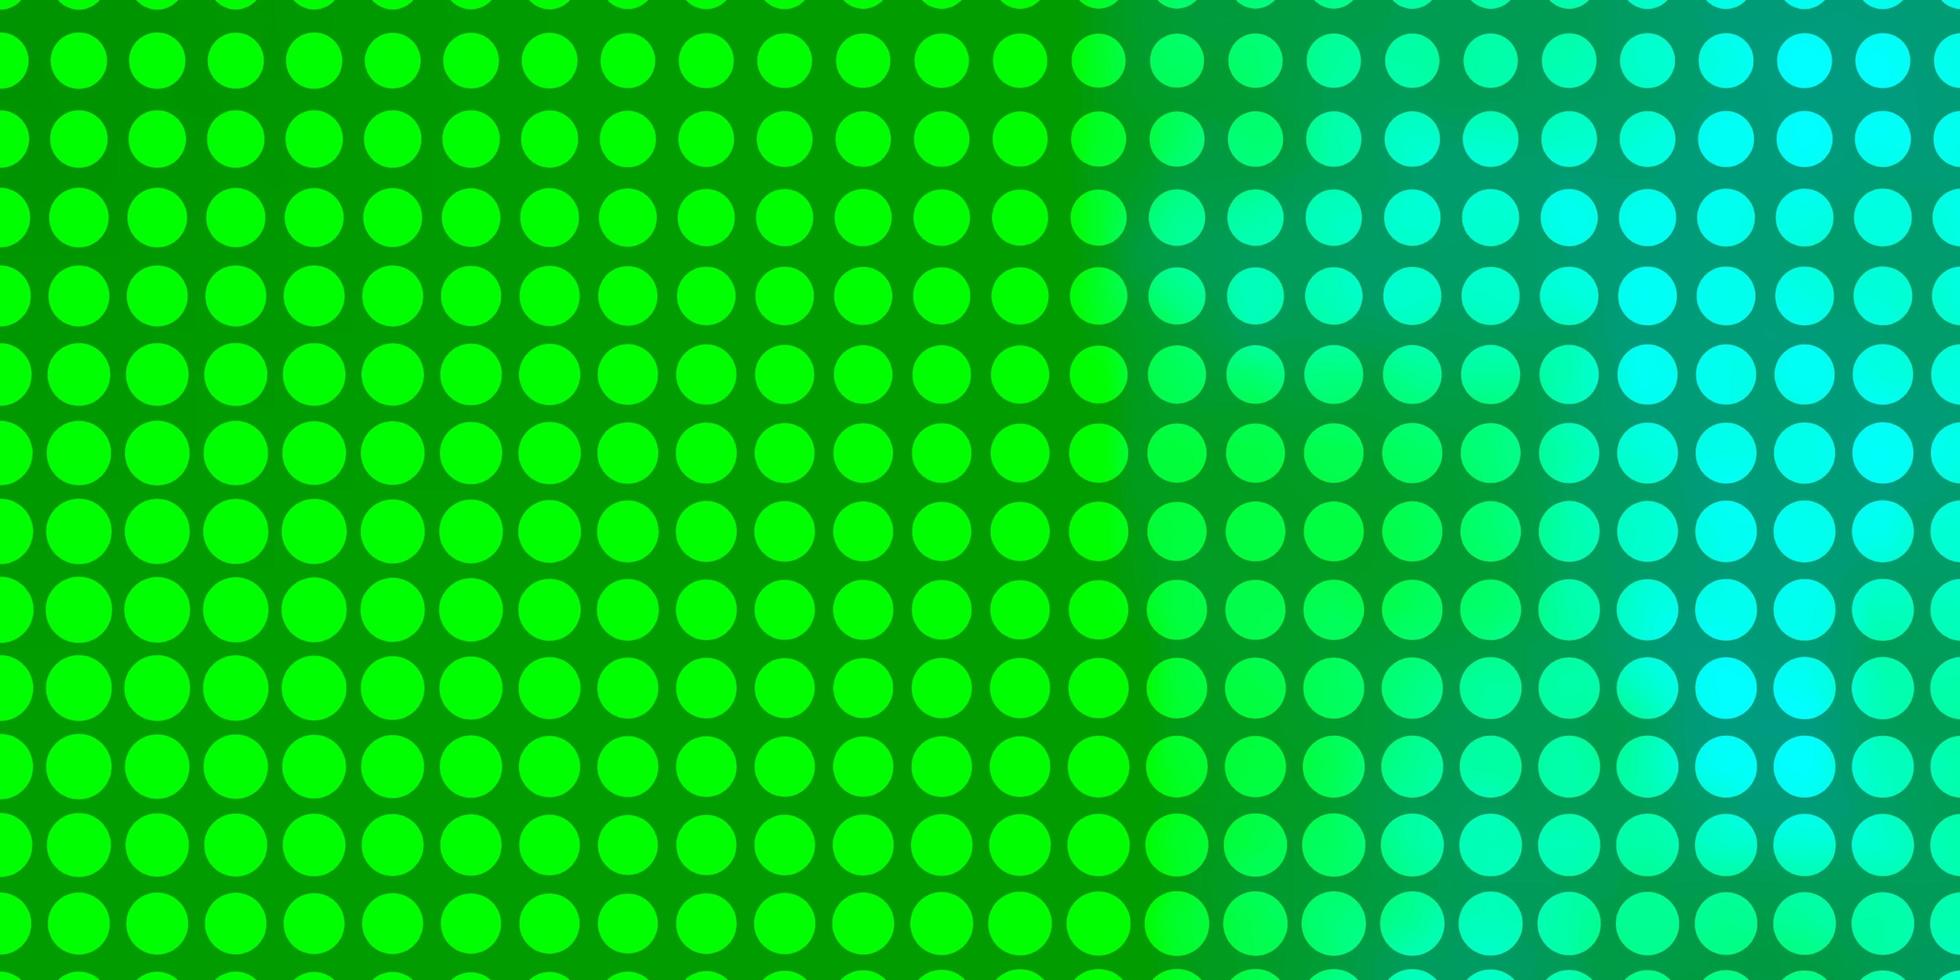 texture vettoriale verde chiaro con cerchi